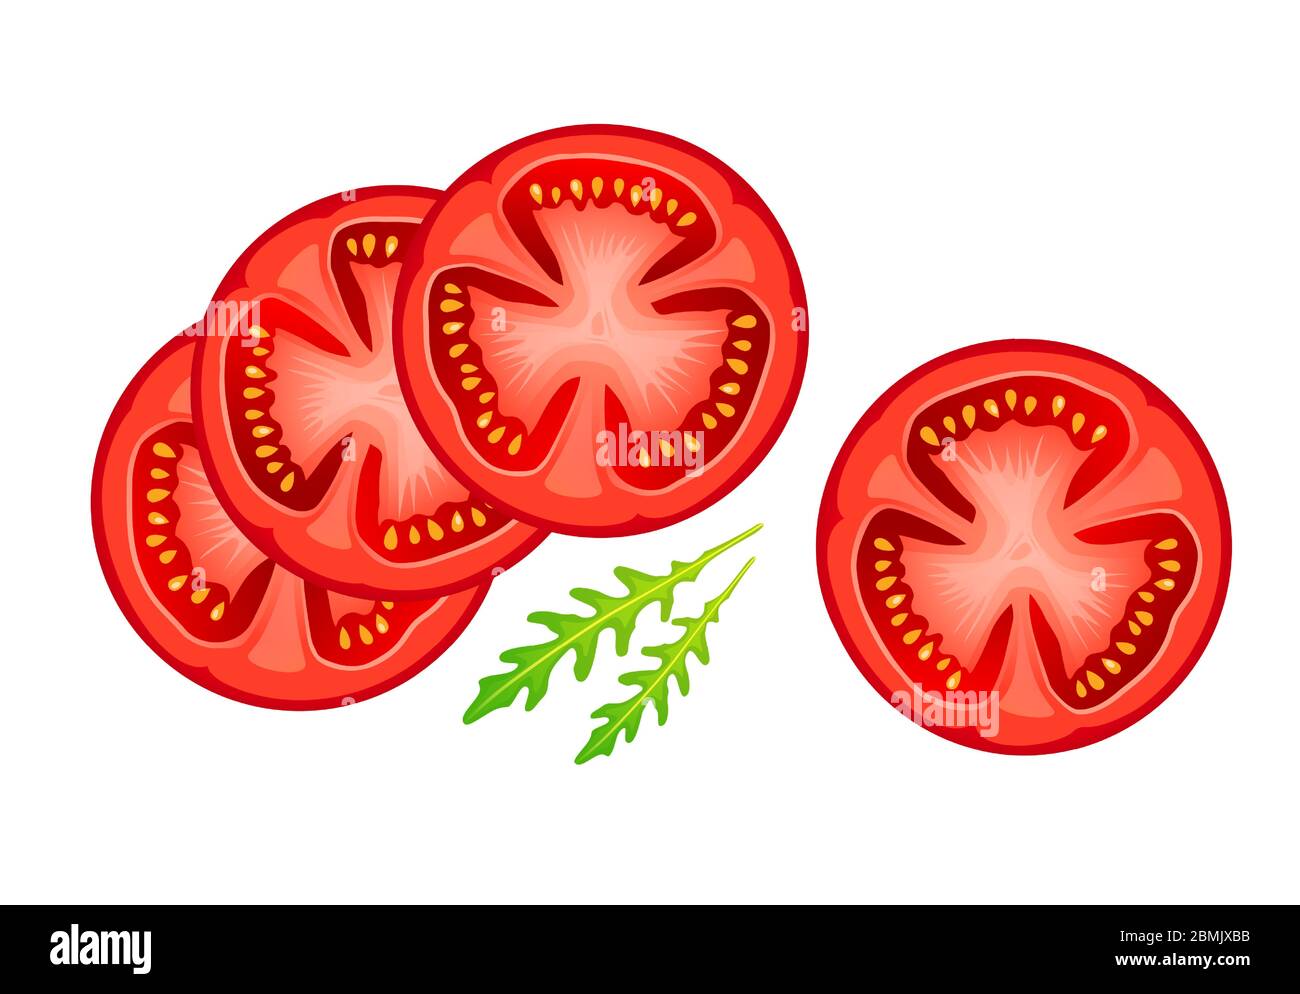 Tomate in Scheiben isoliert auf weißem Hintergrund. Realistische rote Scheiben Tomaten und Rucola Blätter. Reifes Gemüse, runde Stücke für Salat oder andere gesunde Stock Vektor